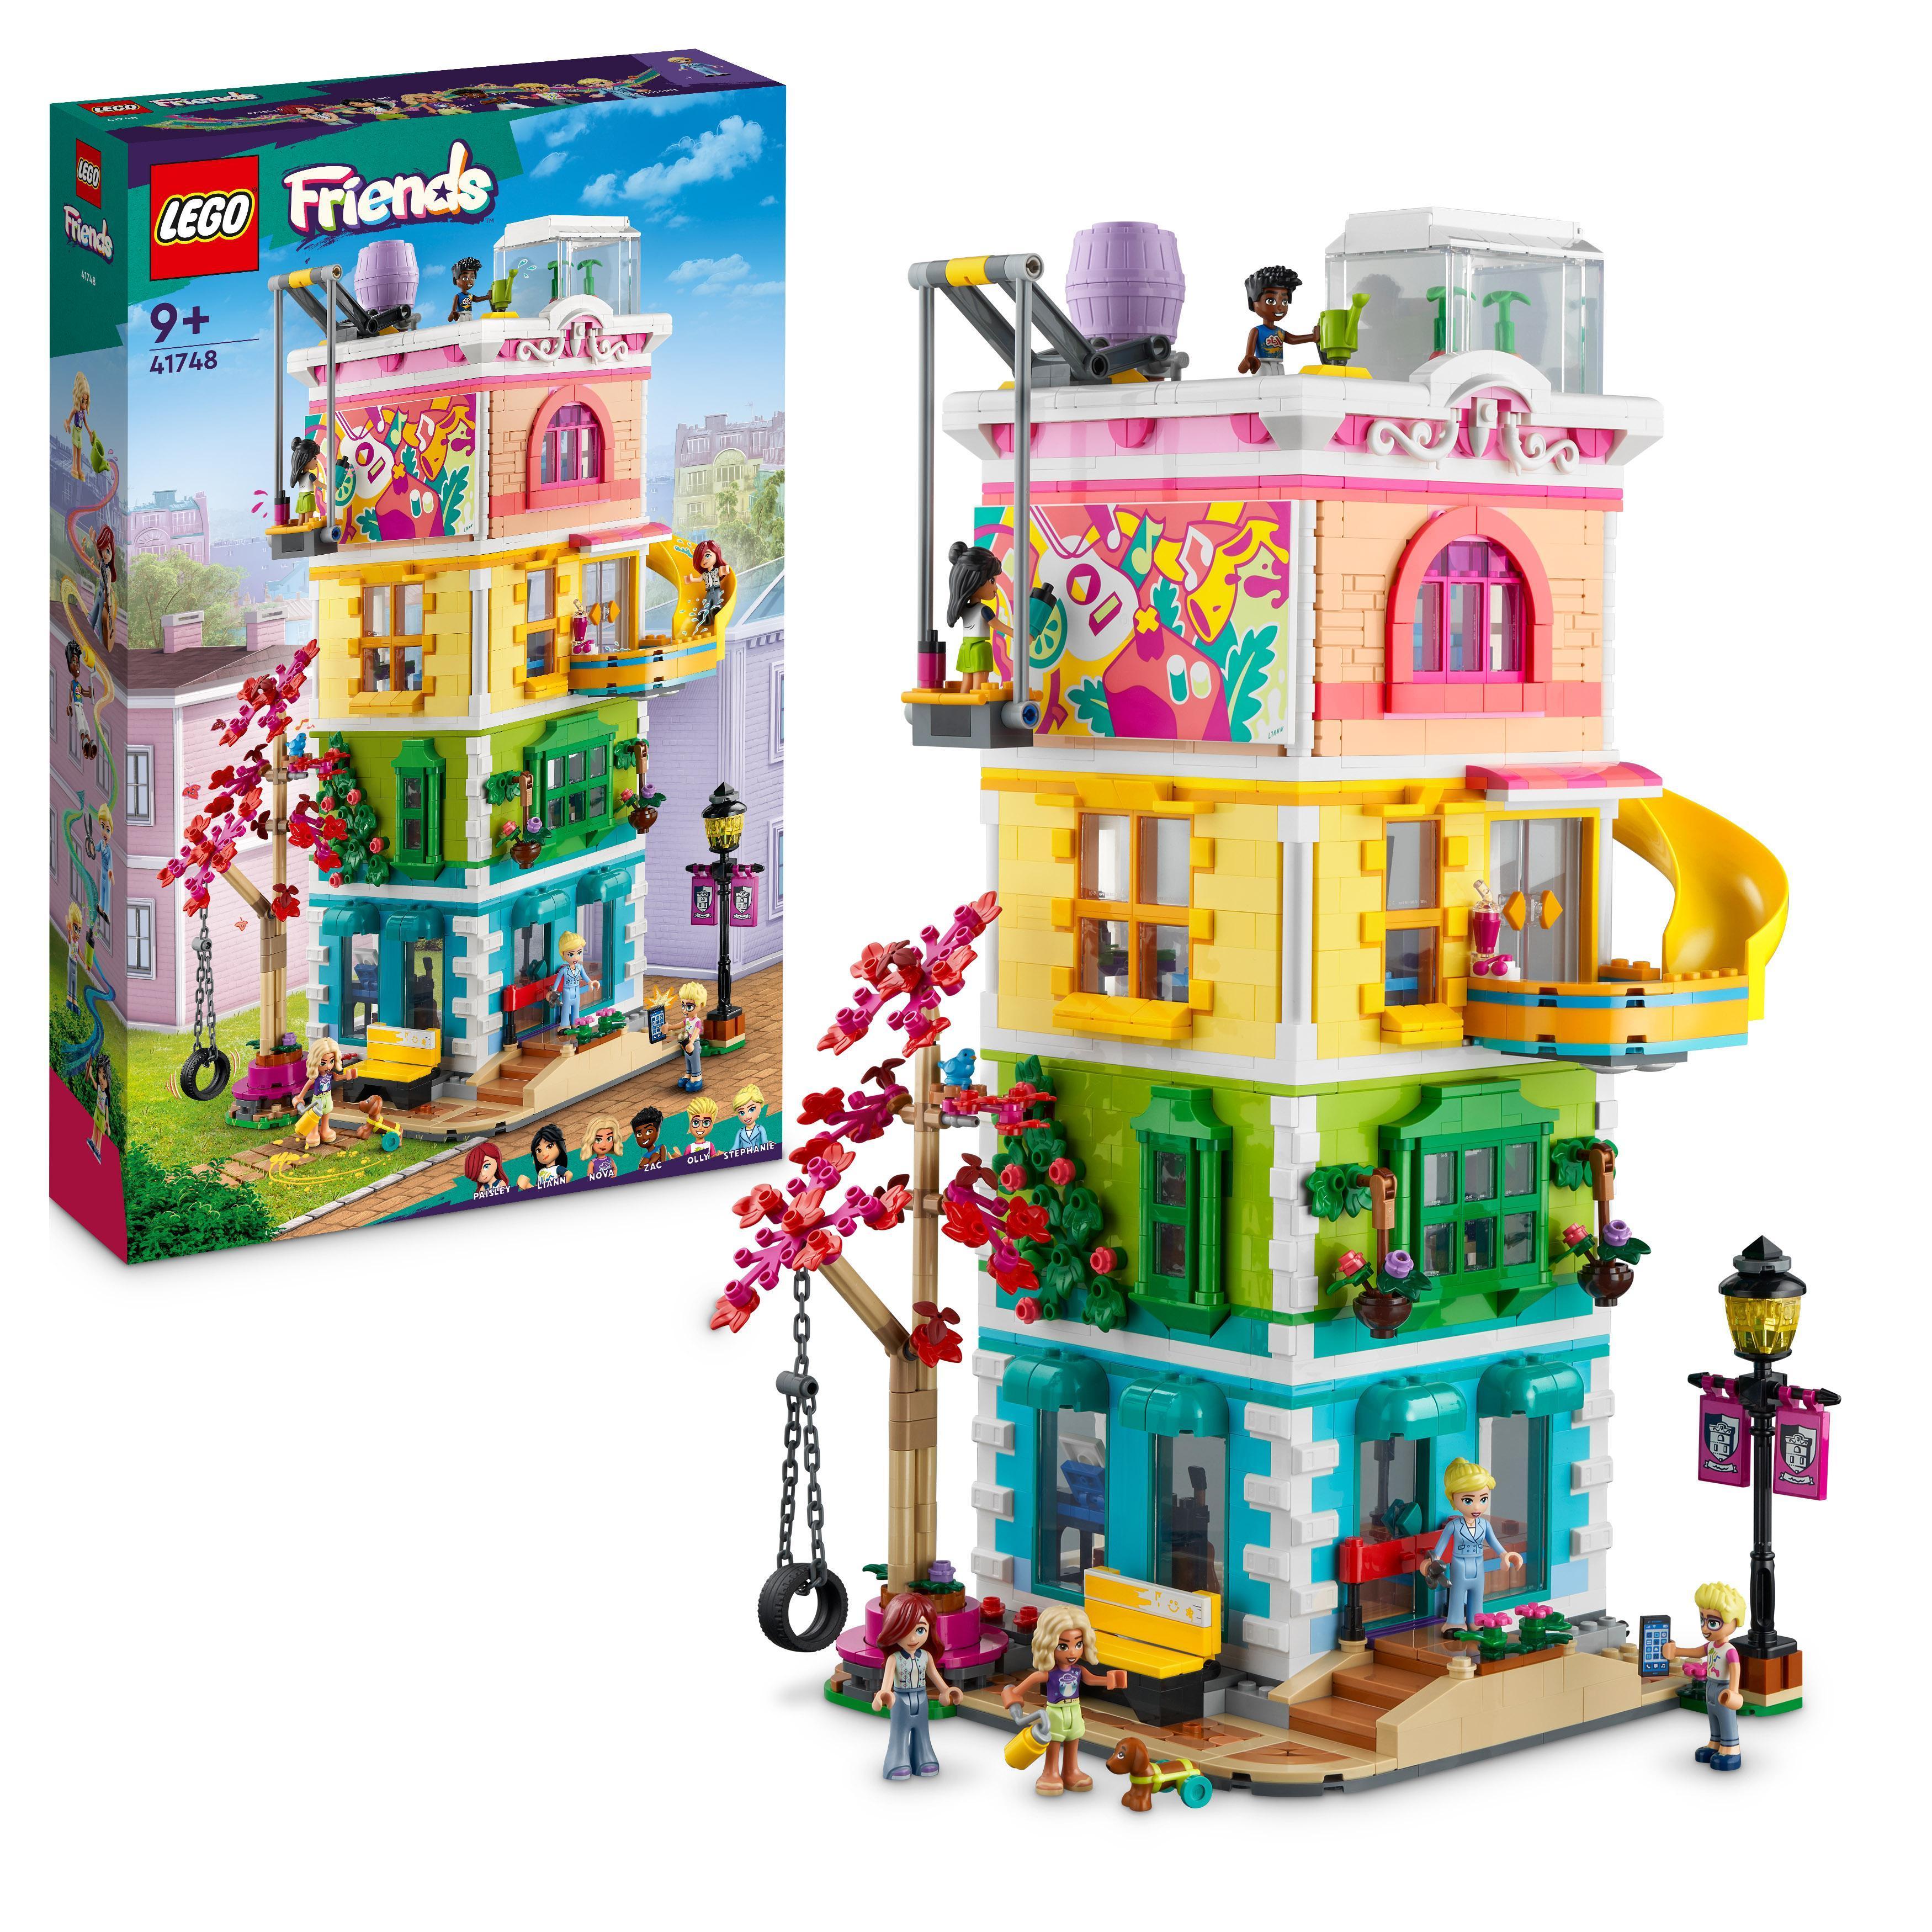 LEGO Friends - Heartlake Citys samfunnshus (41748) - Leker